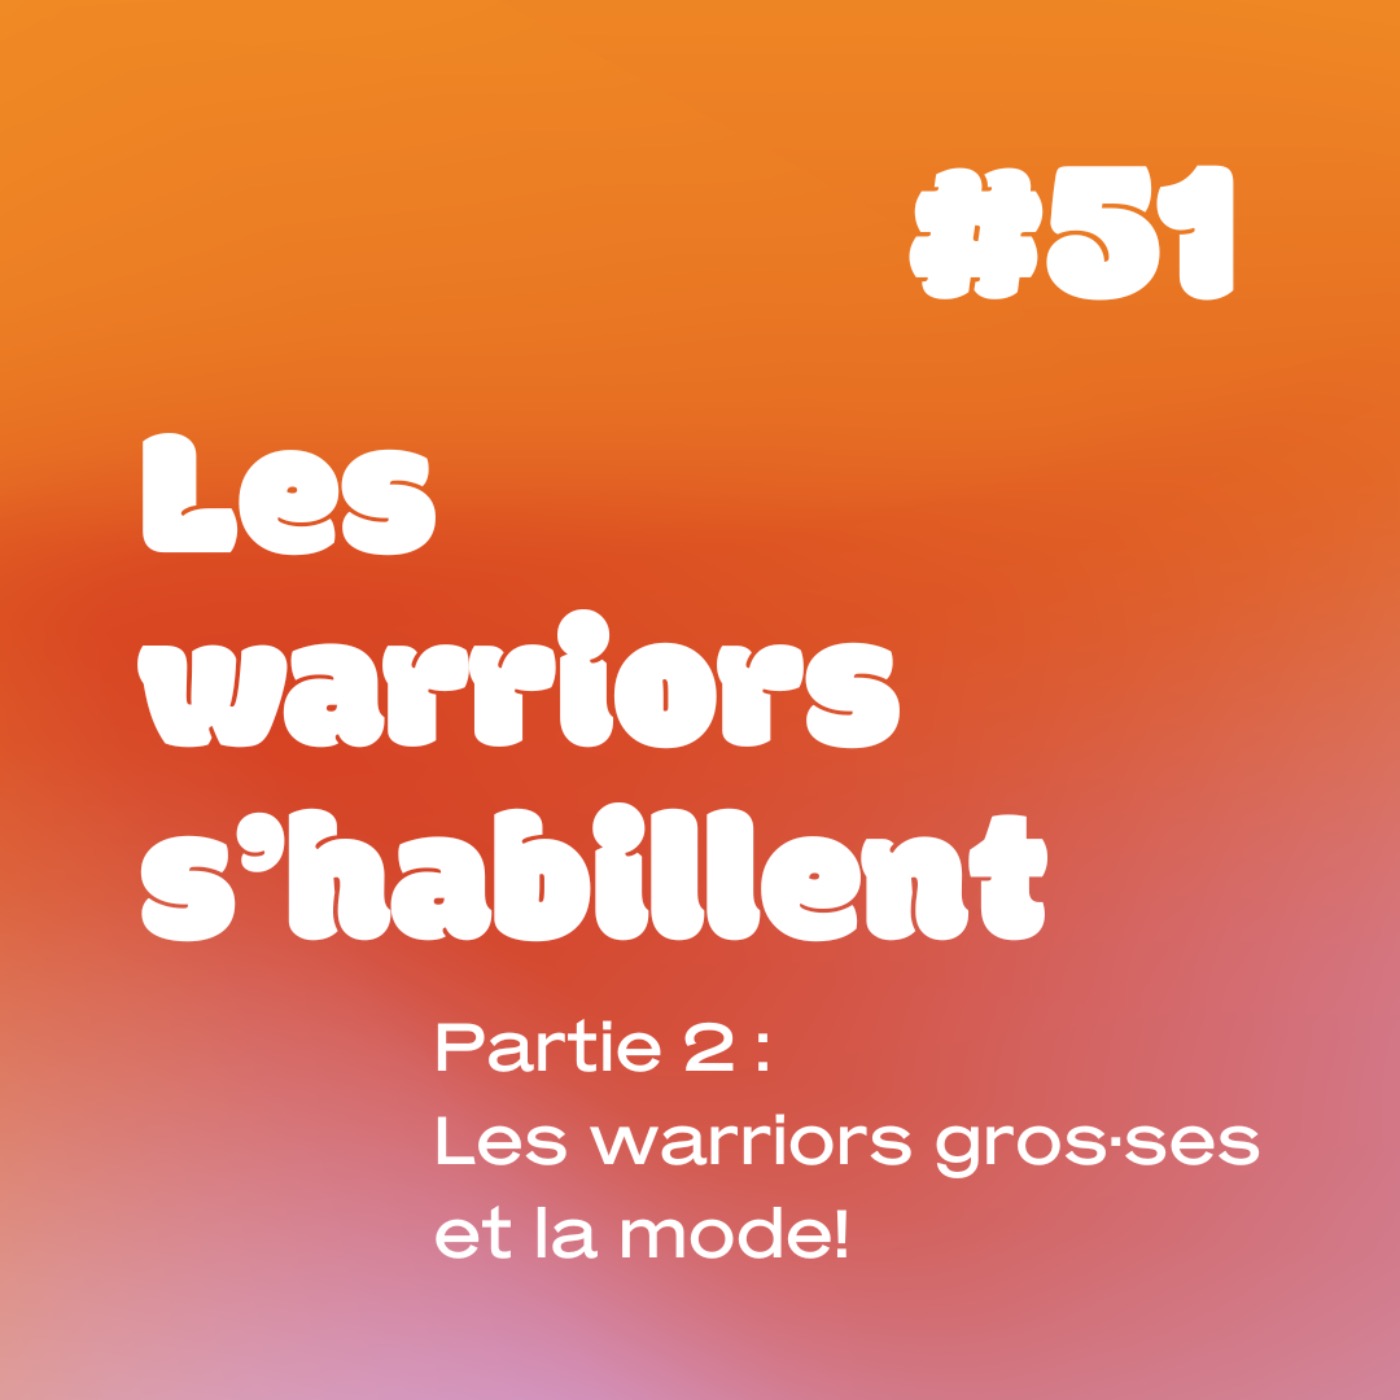 YESSS #51 les Warriors s’habillent (partie 2)